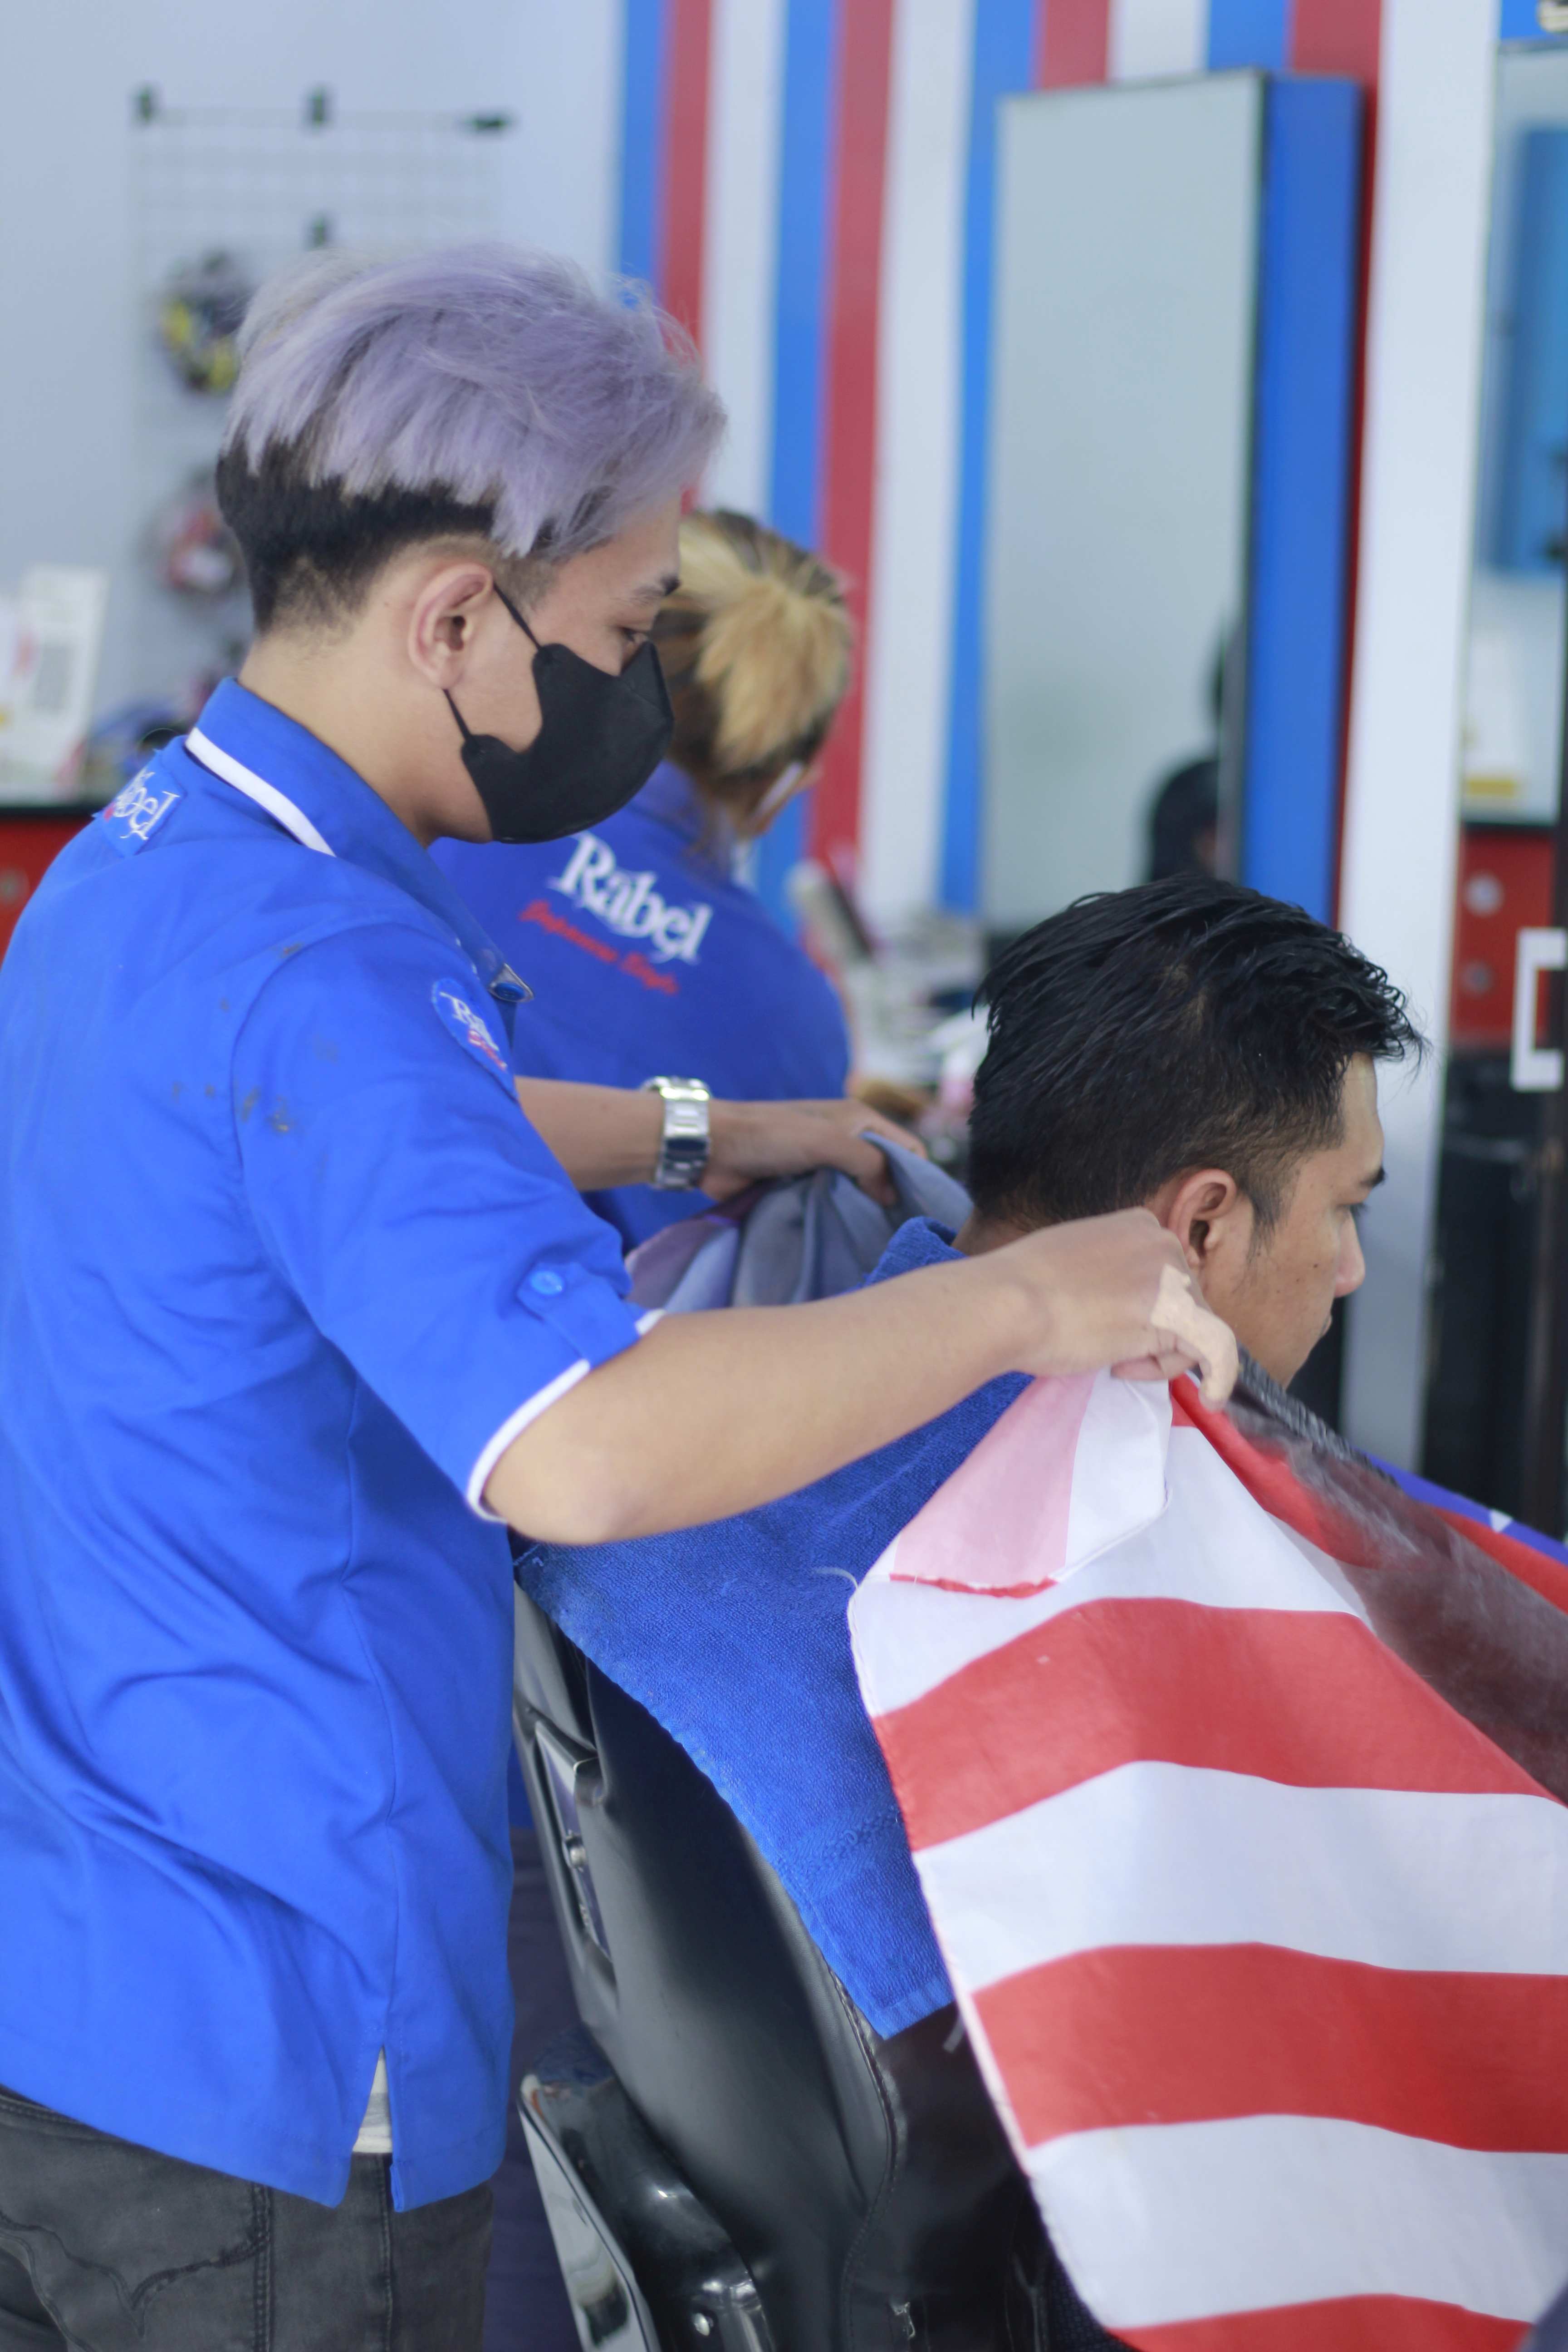 Tempat Barbershop Di Jl. Tumenggung Suryo Profesional